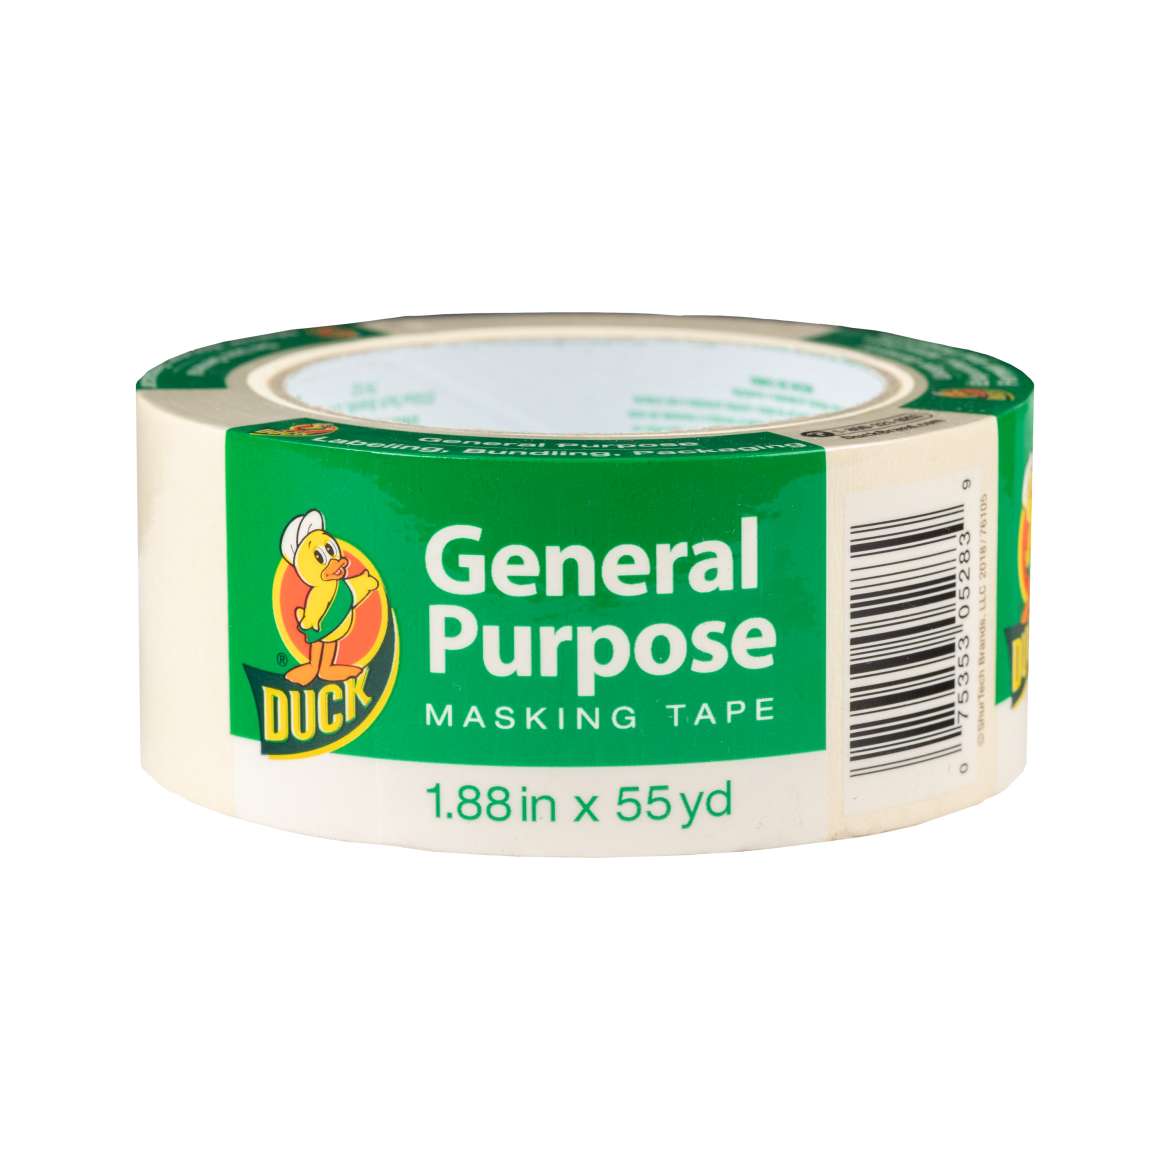 General Purpose Masking Tape Image